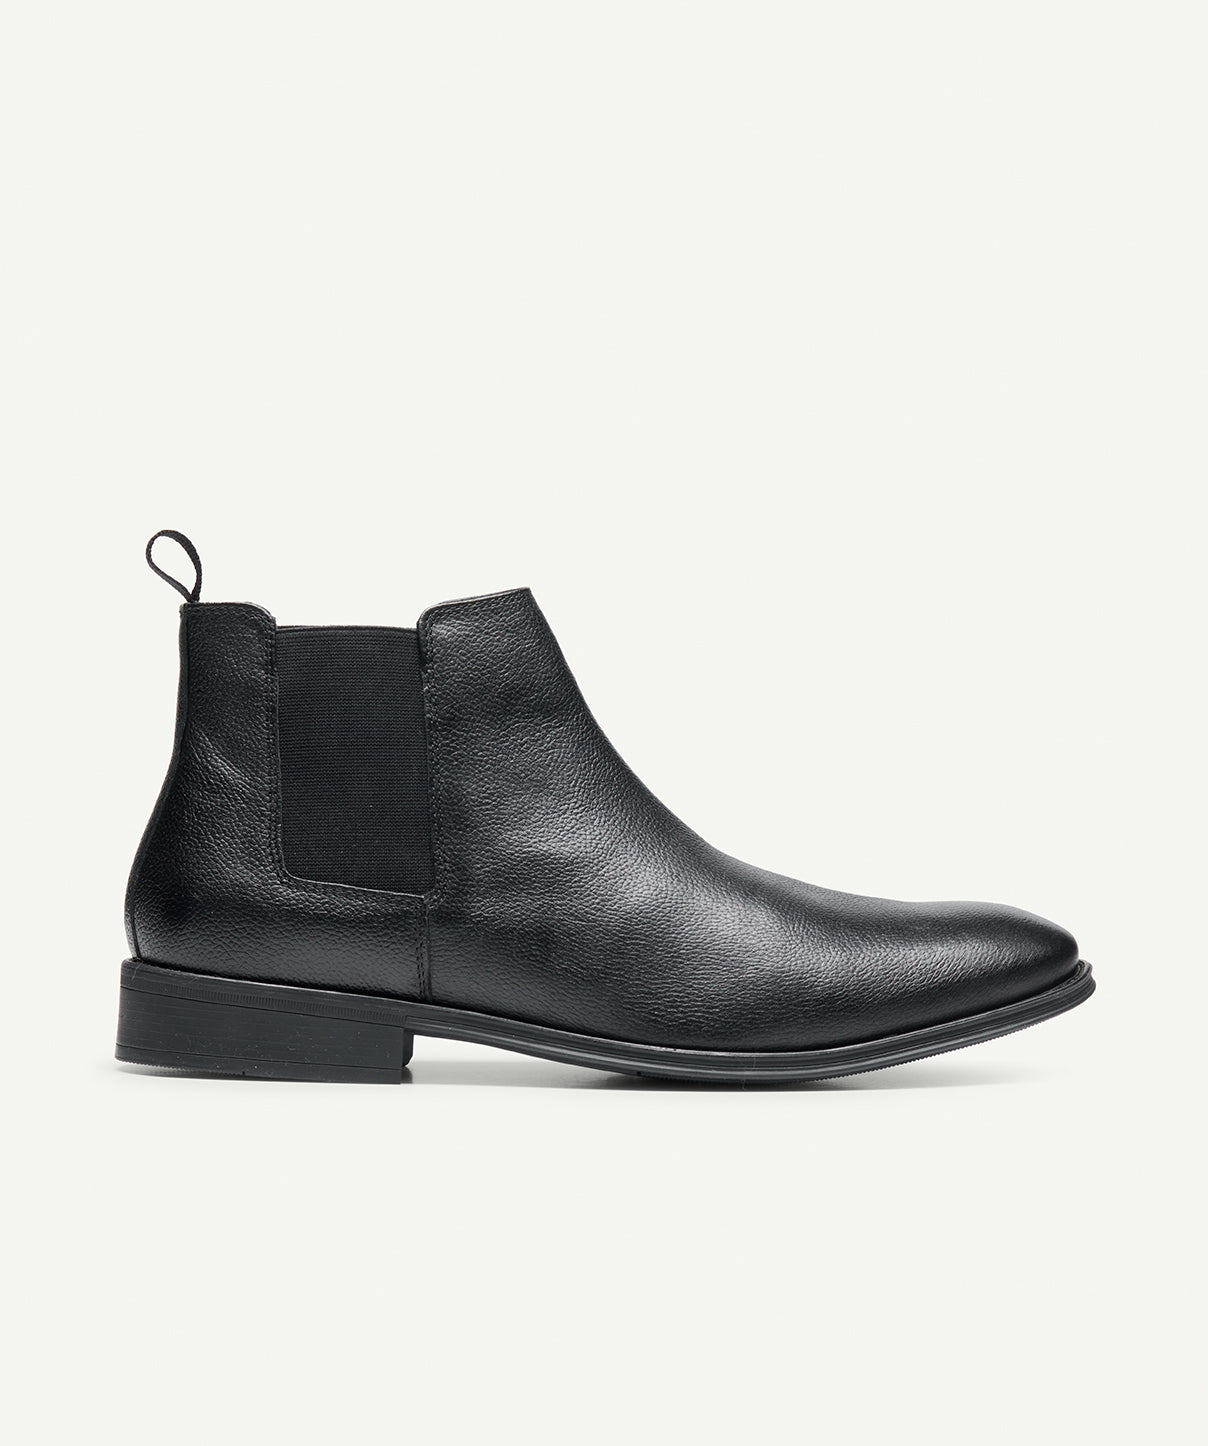 GAZMAN Leather Chelsea Boot - Black - Shoes - GAZMAN